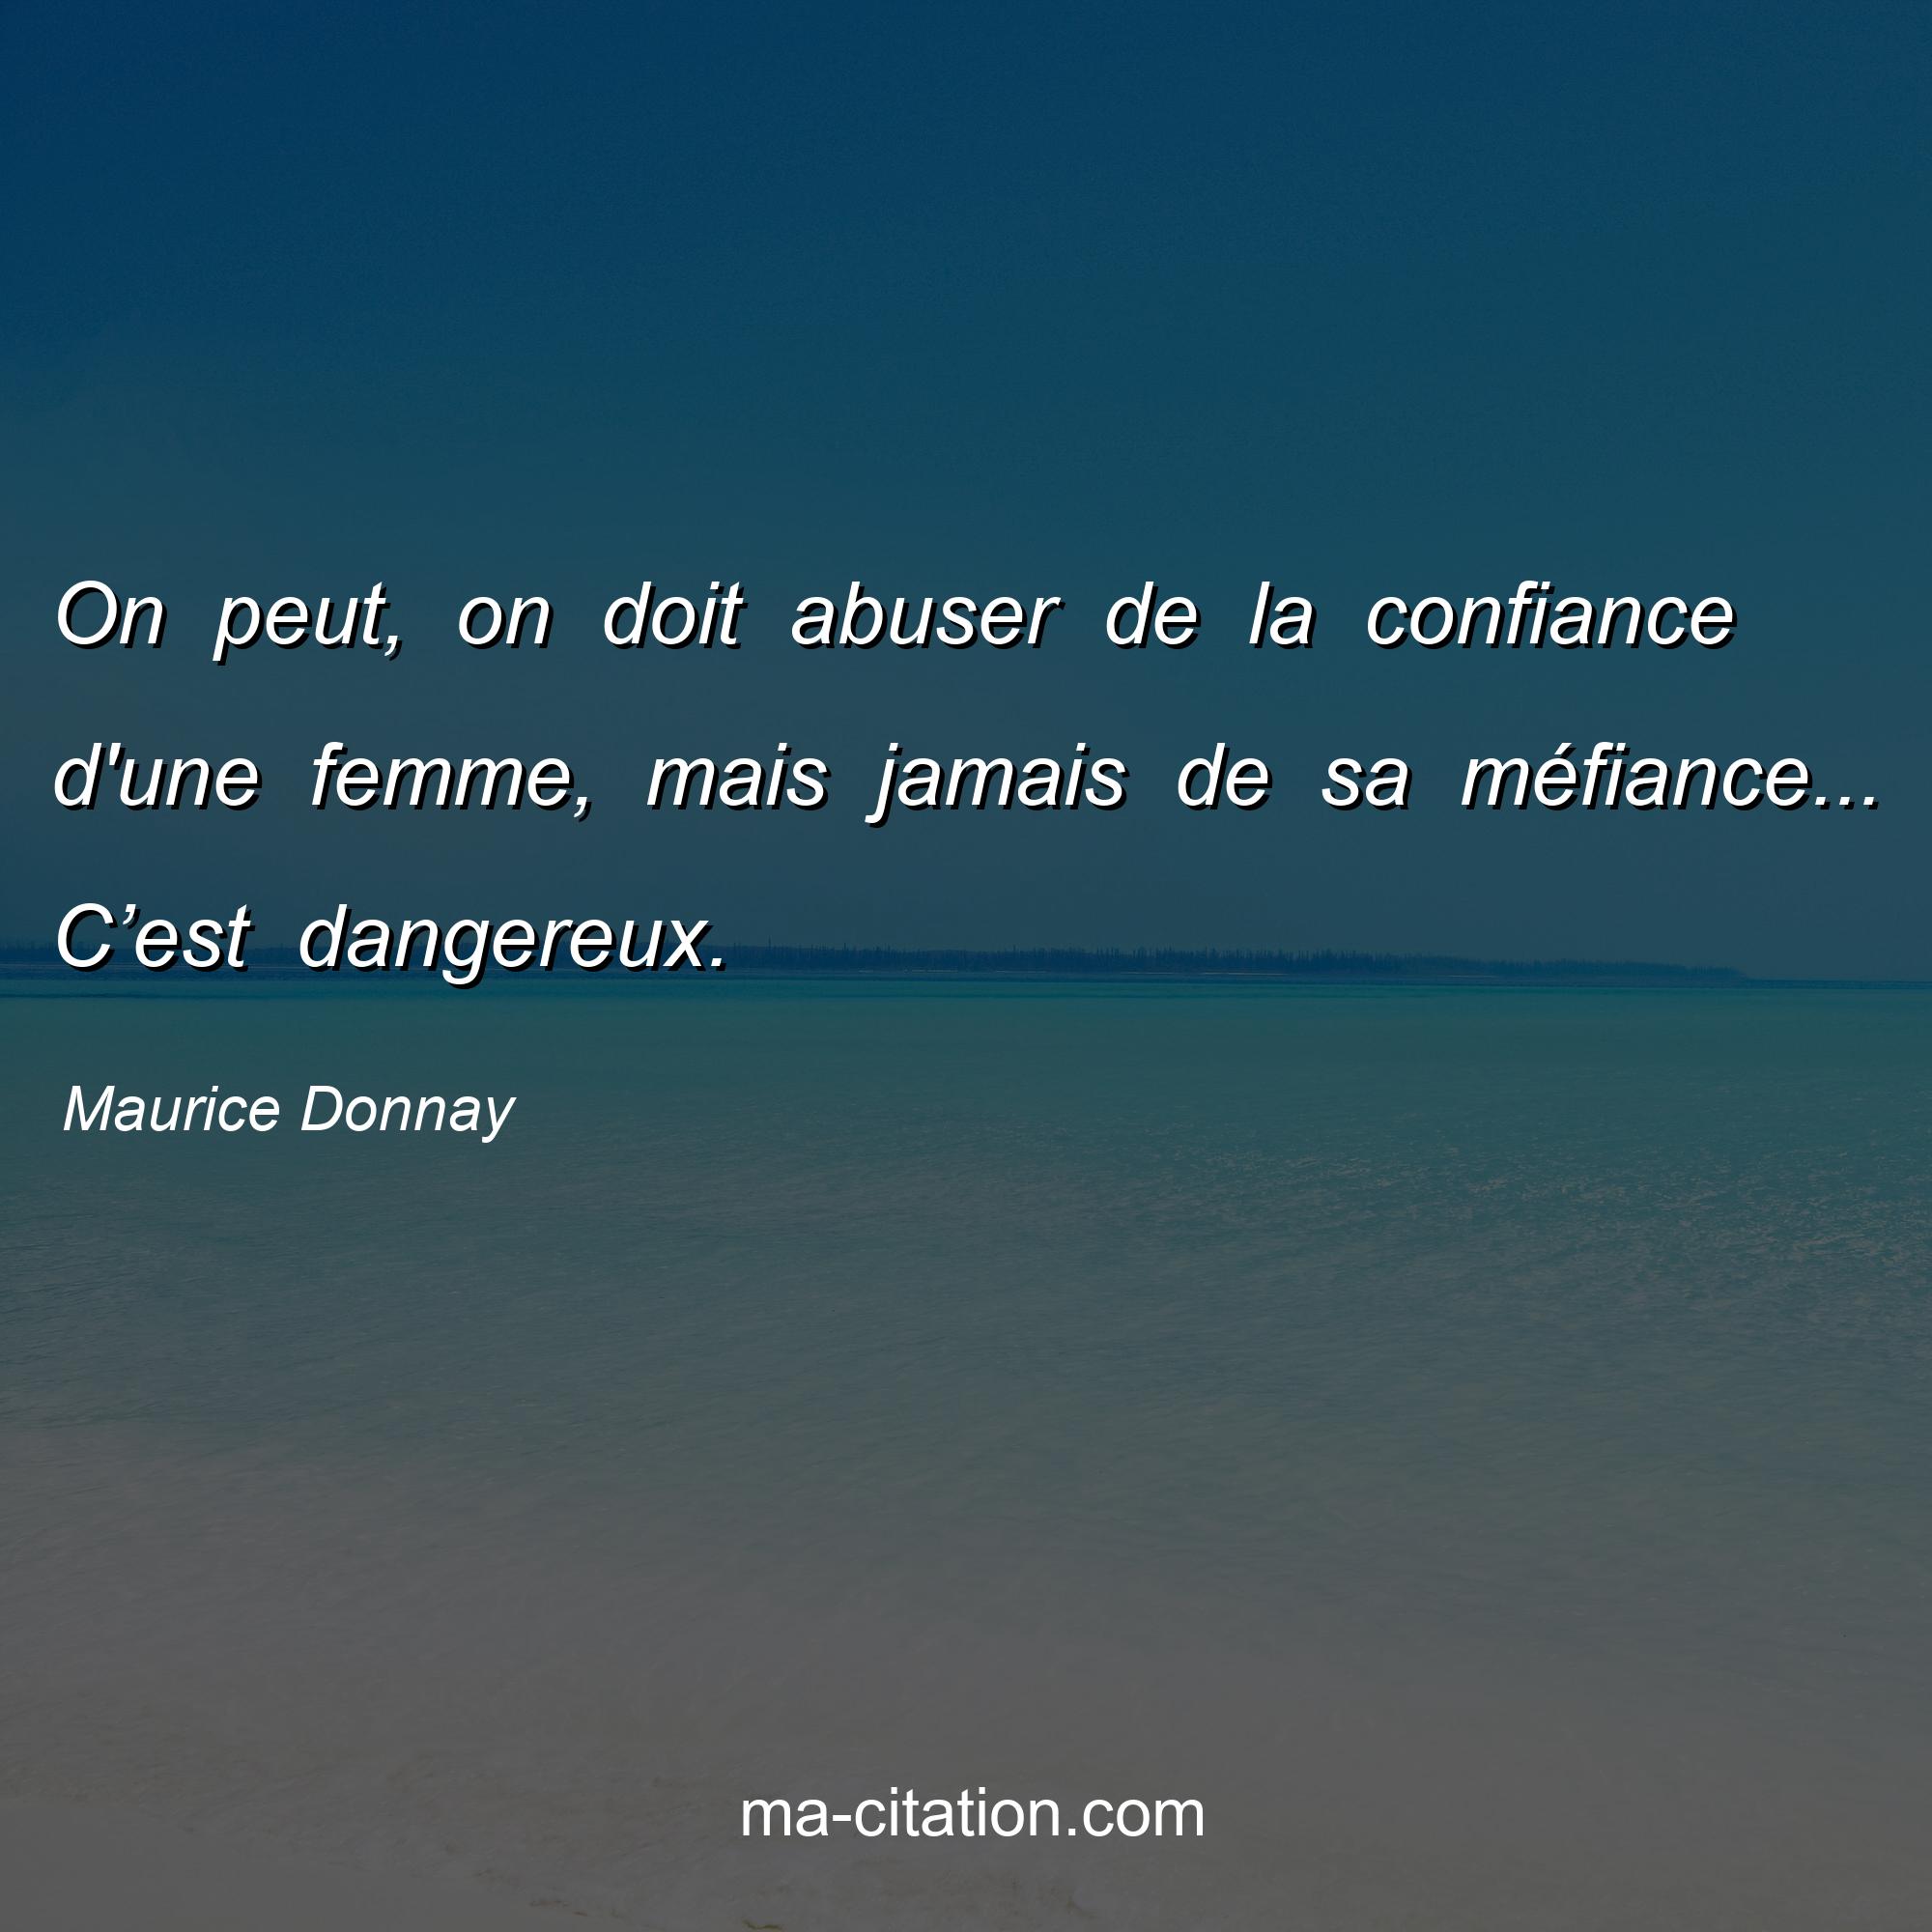 Maurice Donnay : On peut, on doit abuser de la confiance d'une femme, mais jamais de sa méfiance... C’est dangereux.